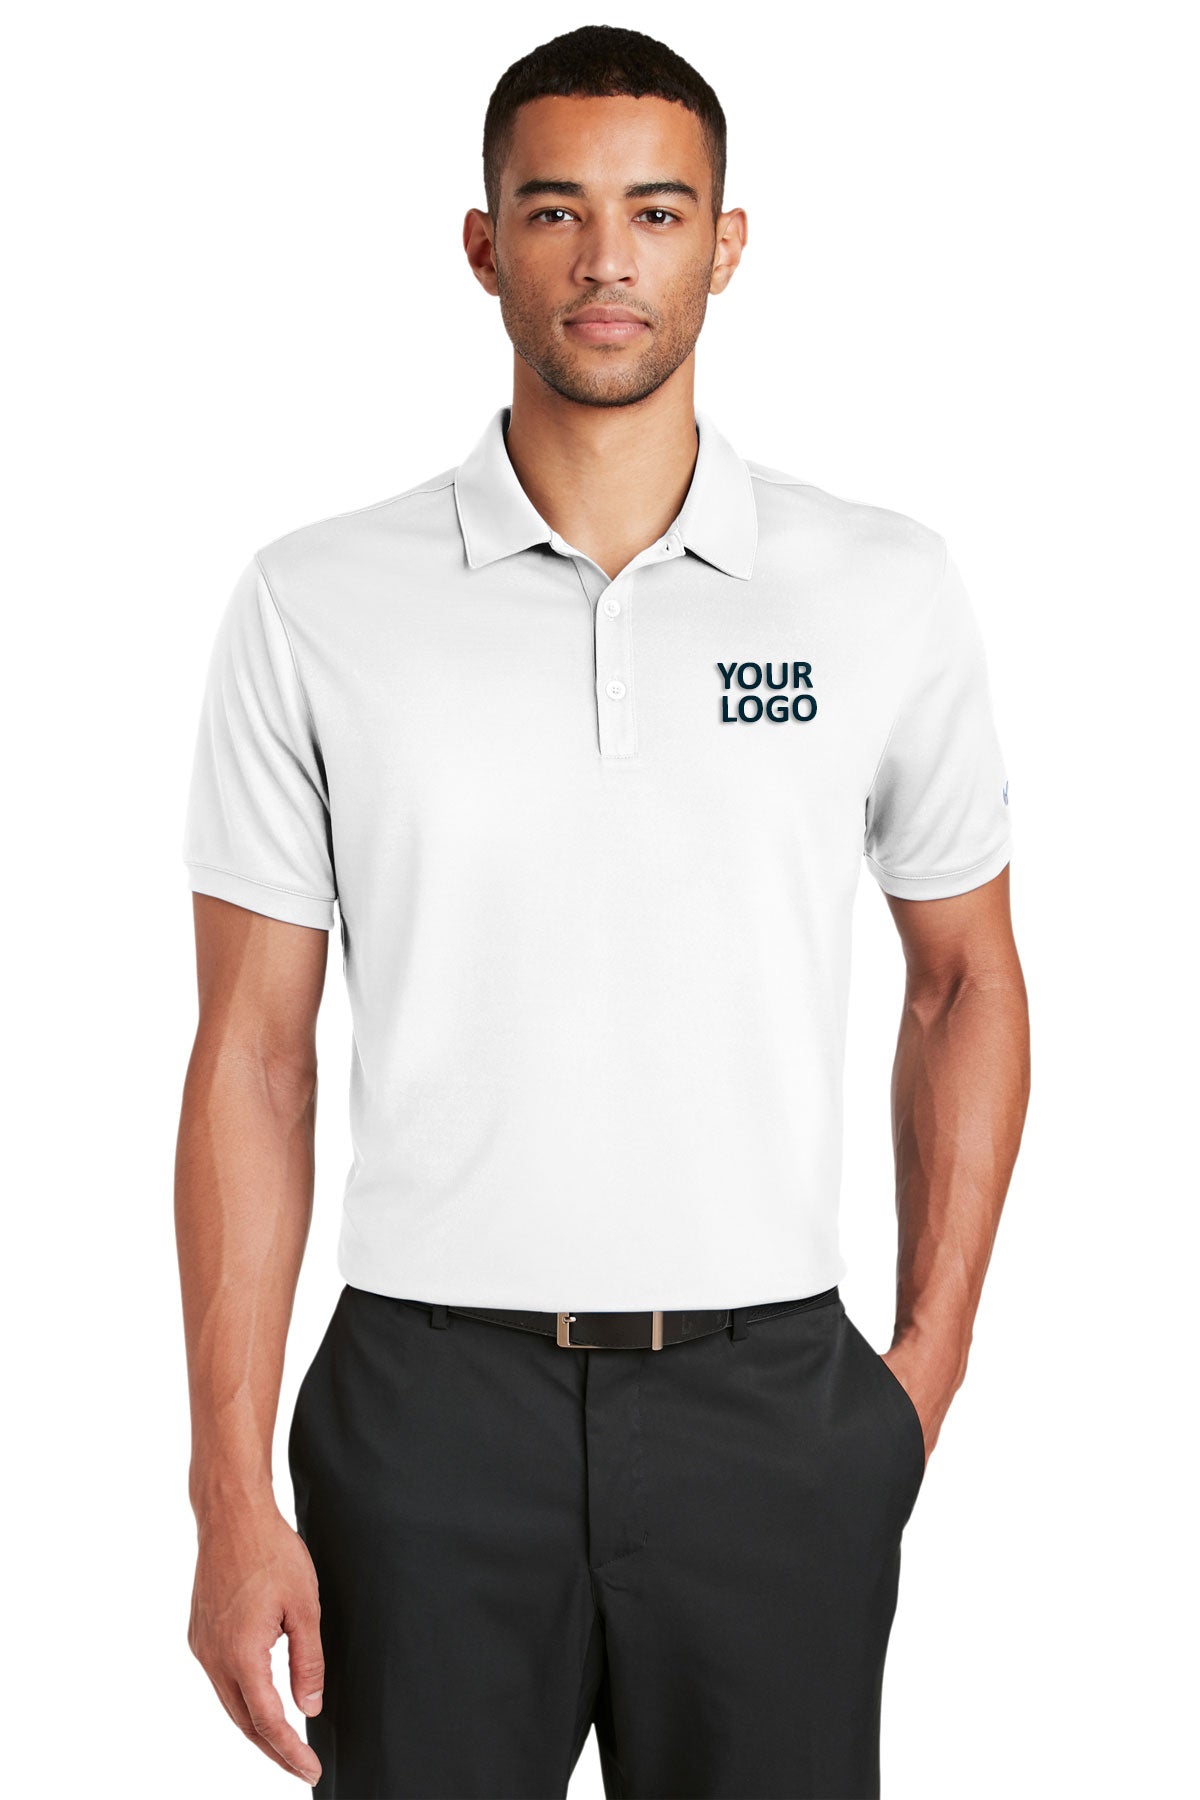 nike white 799802 quality polo shirts with company logo